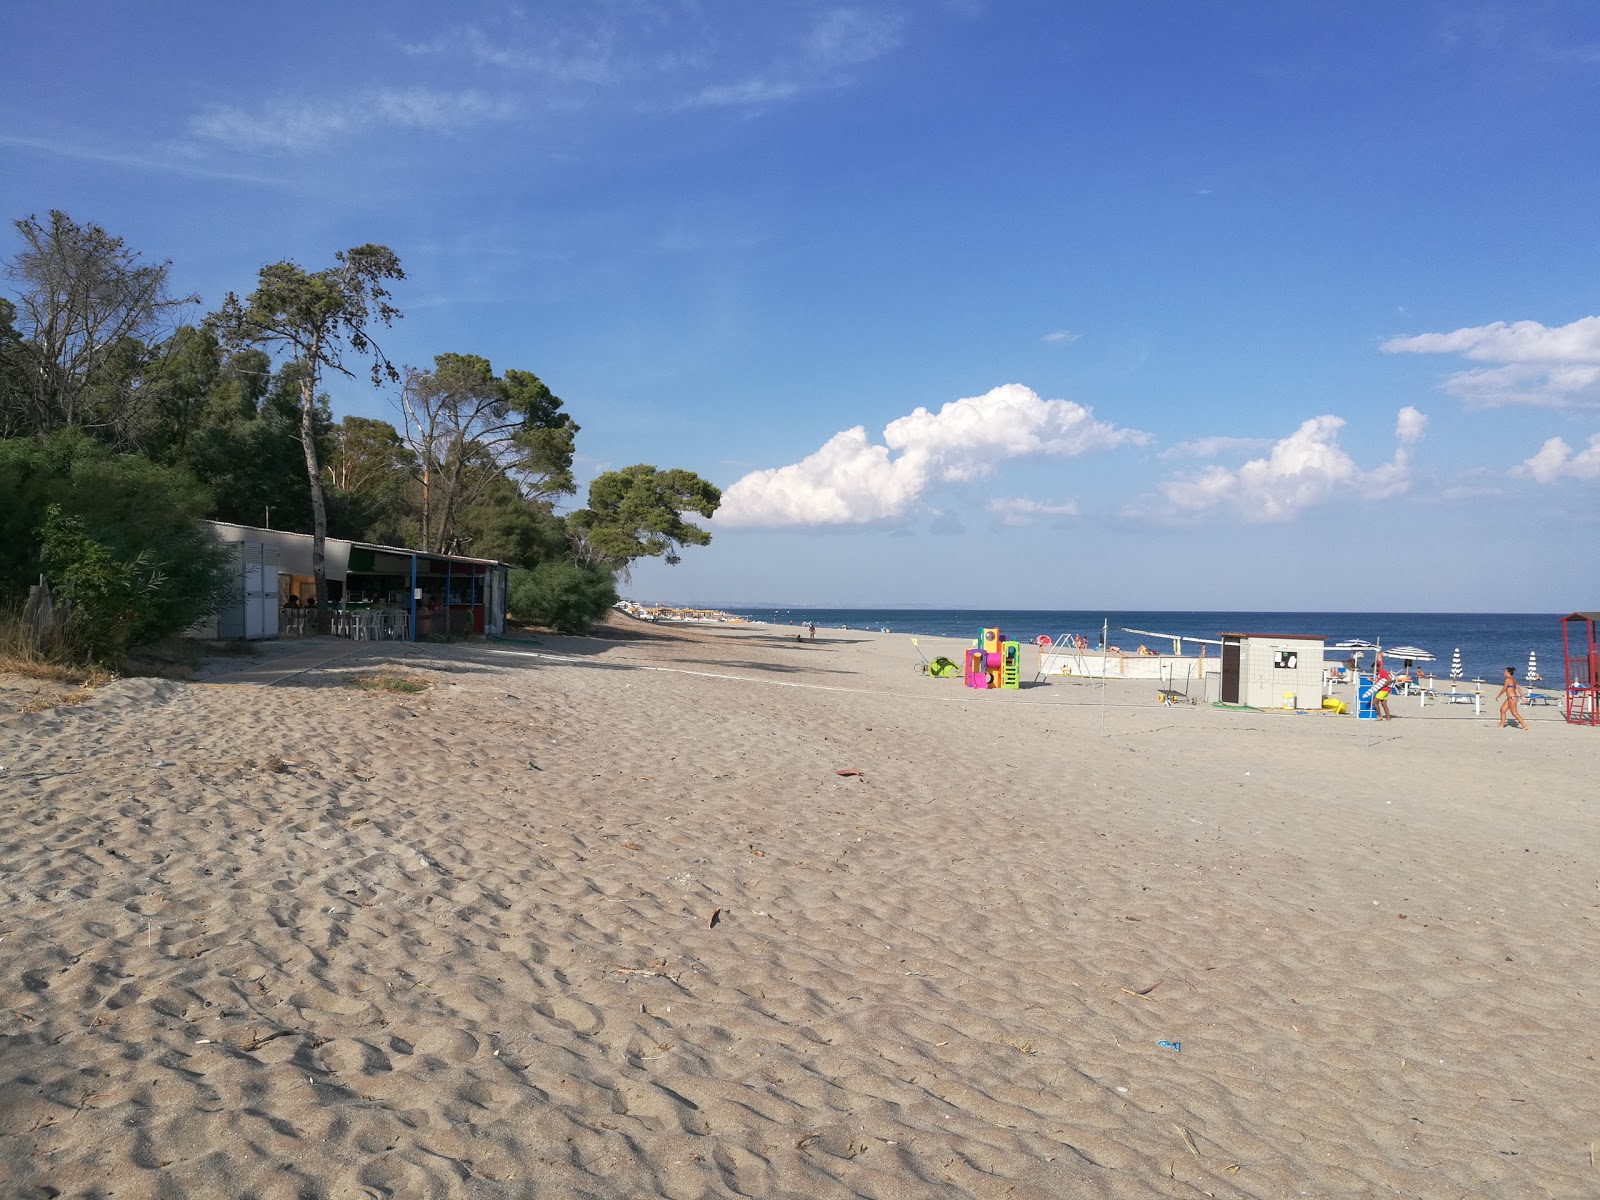 Foto di Simeri Mare beach ubicato in zona naturale